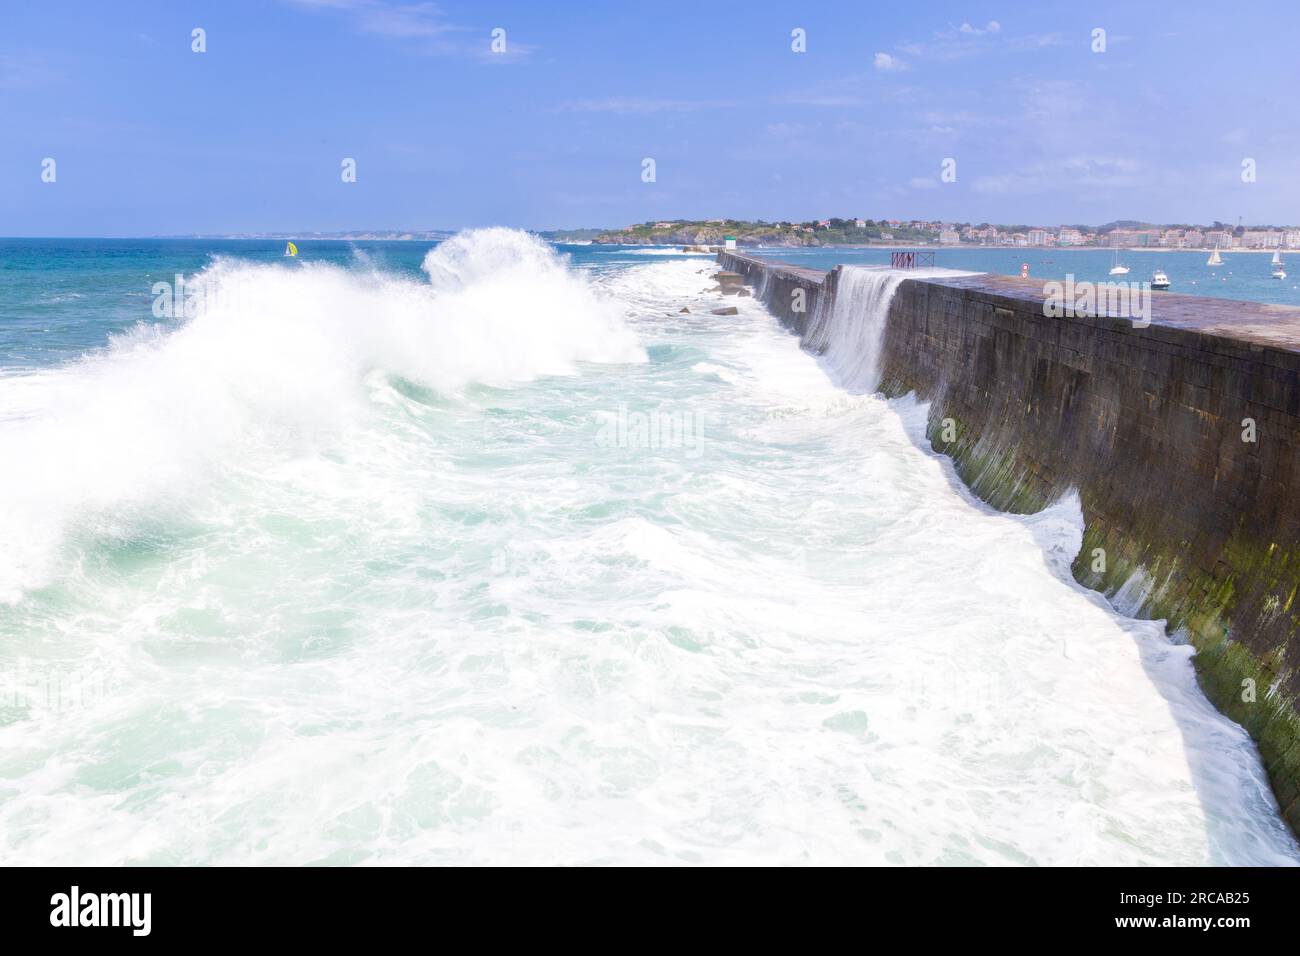 Digue de Socoa (Digue de Socoa), barrière de défense côtière importante, et vagues de l'océan Atlantique s'élevant haut et s'écrasant contre elle. Ciboure, France Banque D'Images